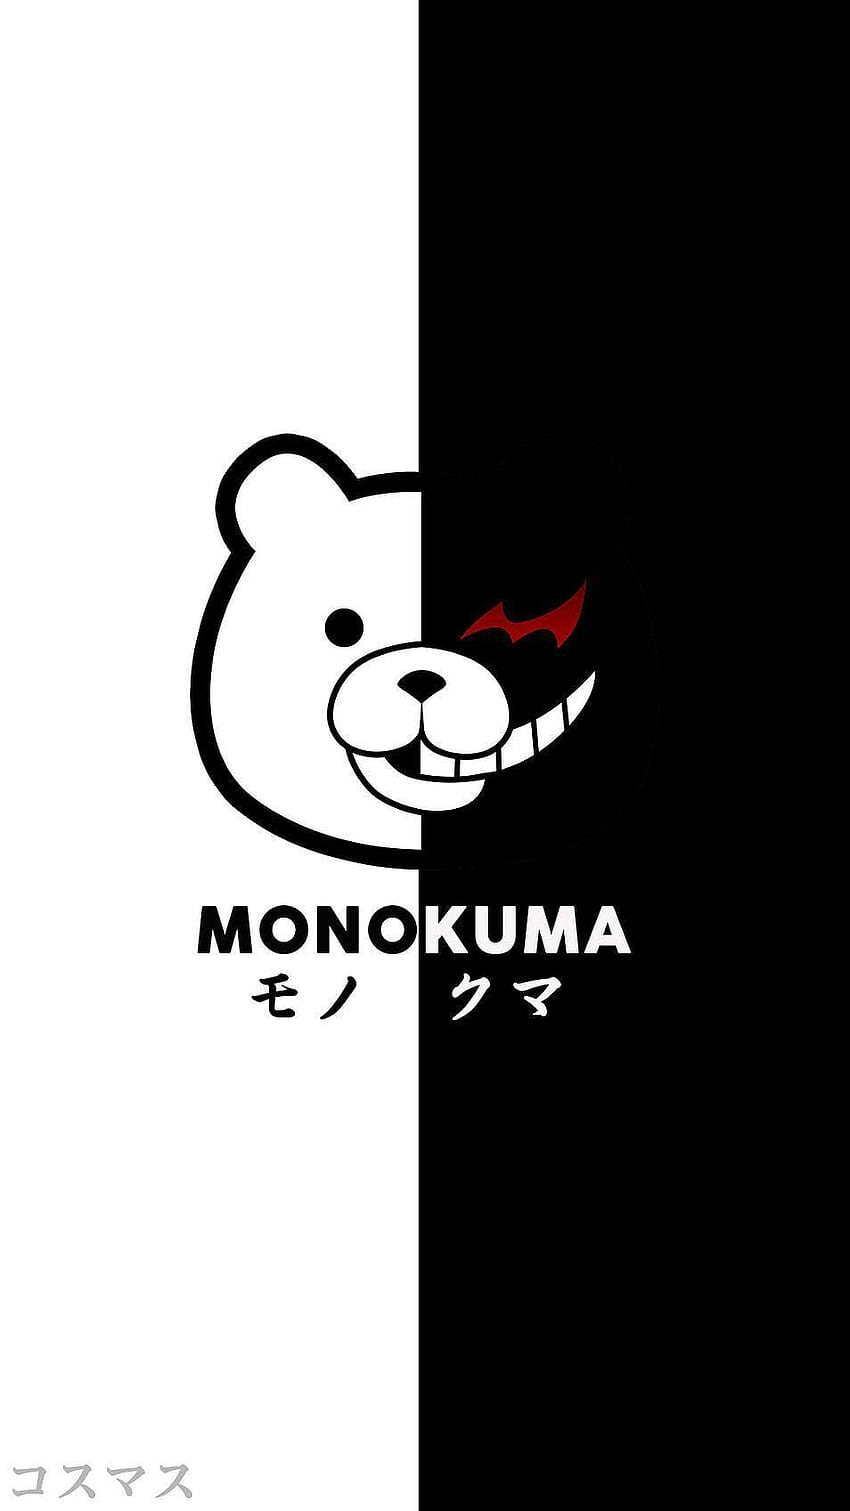 Hình nền điện thoại Monokuma HD 2 mặt: Fan của Danganronpa và Monokuma? Không thể bỏ qua bộ hình nền điện thoại Monokuma HD 2 mặt. Với thiết kế tươi sáng, sắc nét, hình ảnh Monokuma cực kỳ ấn tượng, sản phẩm này chắc chắn sẽ làm hài lòng những ai đang tìm kiếm một bộ hình nền điện thoại đầy cá tính. Bấm vào ảnh để xem ngay. 